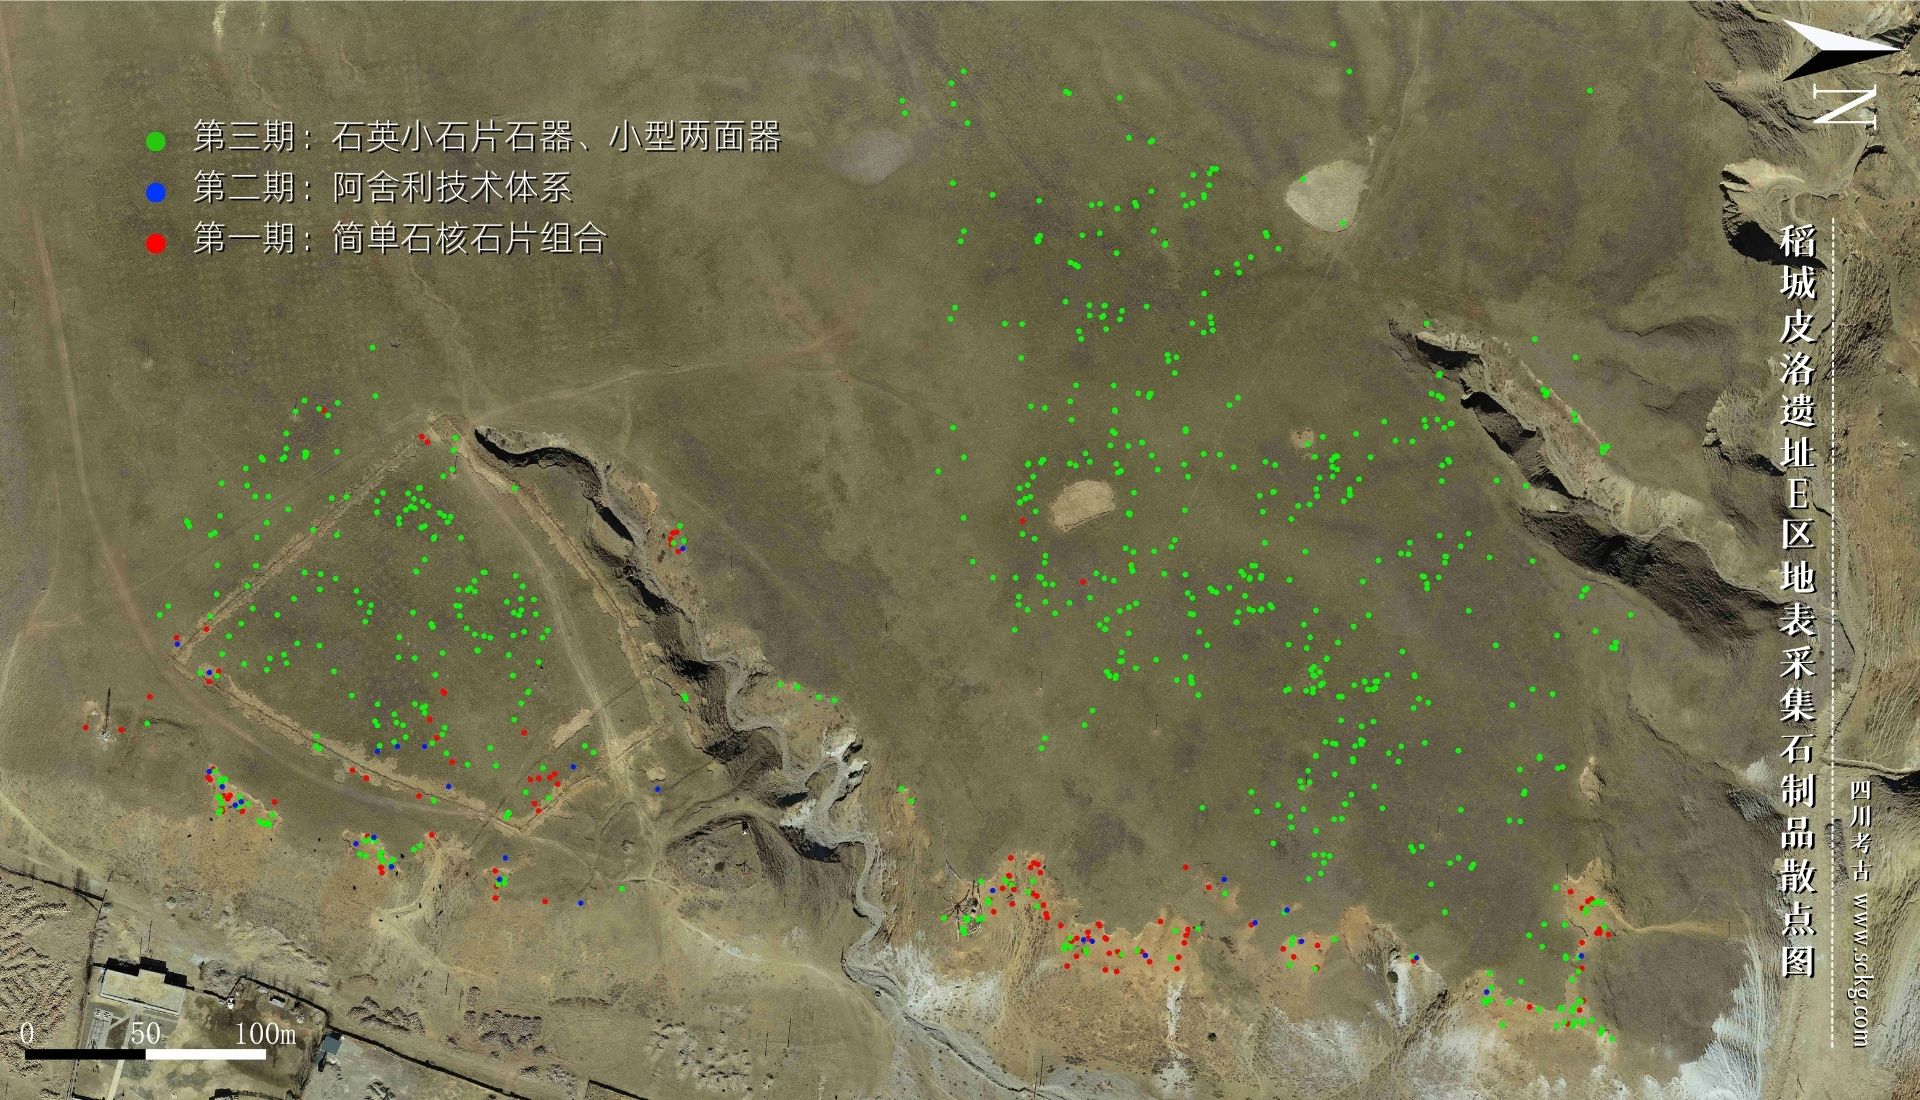 002稻城皮洛遗址E区地表采集石制品散点图.jpg